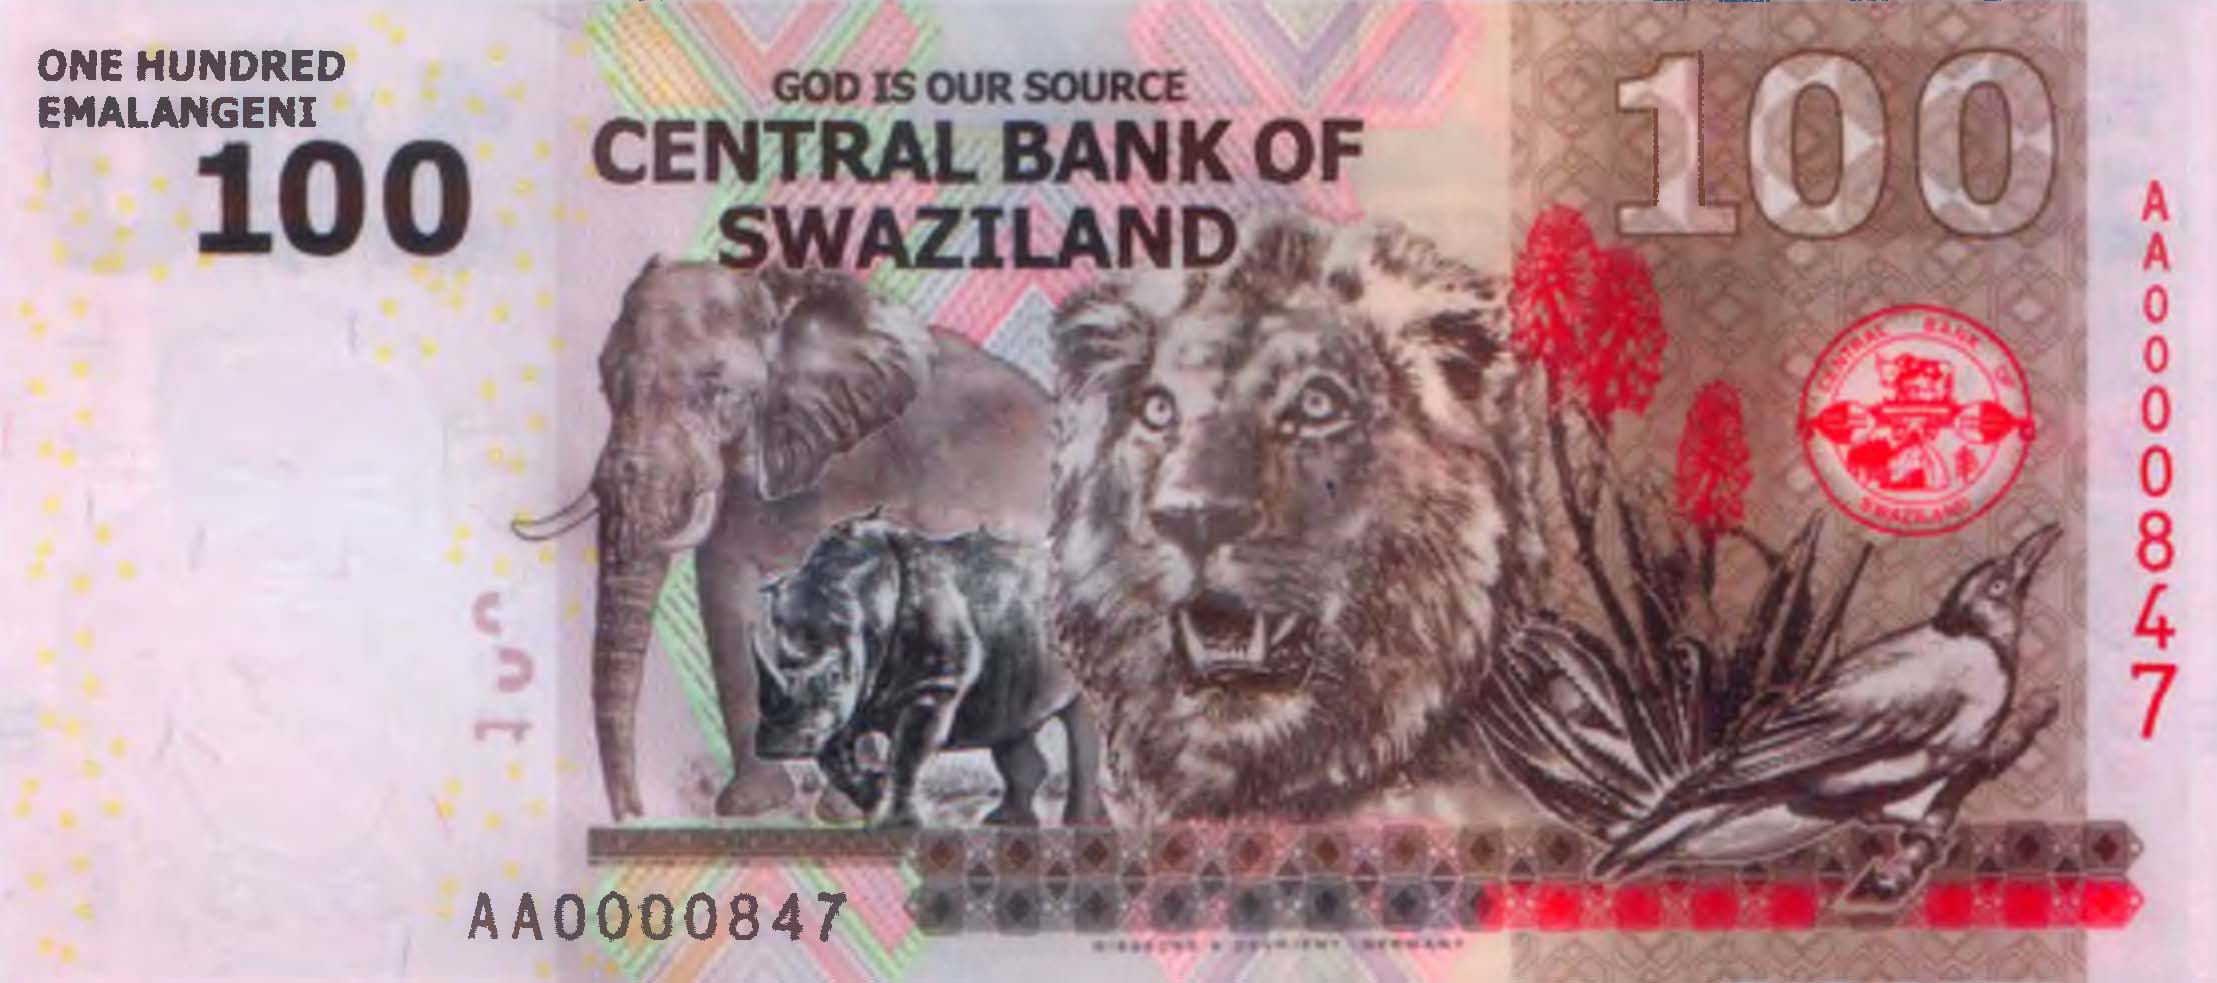 100 емалангени, Свазиленд, 2010 г.